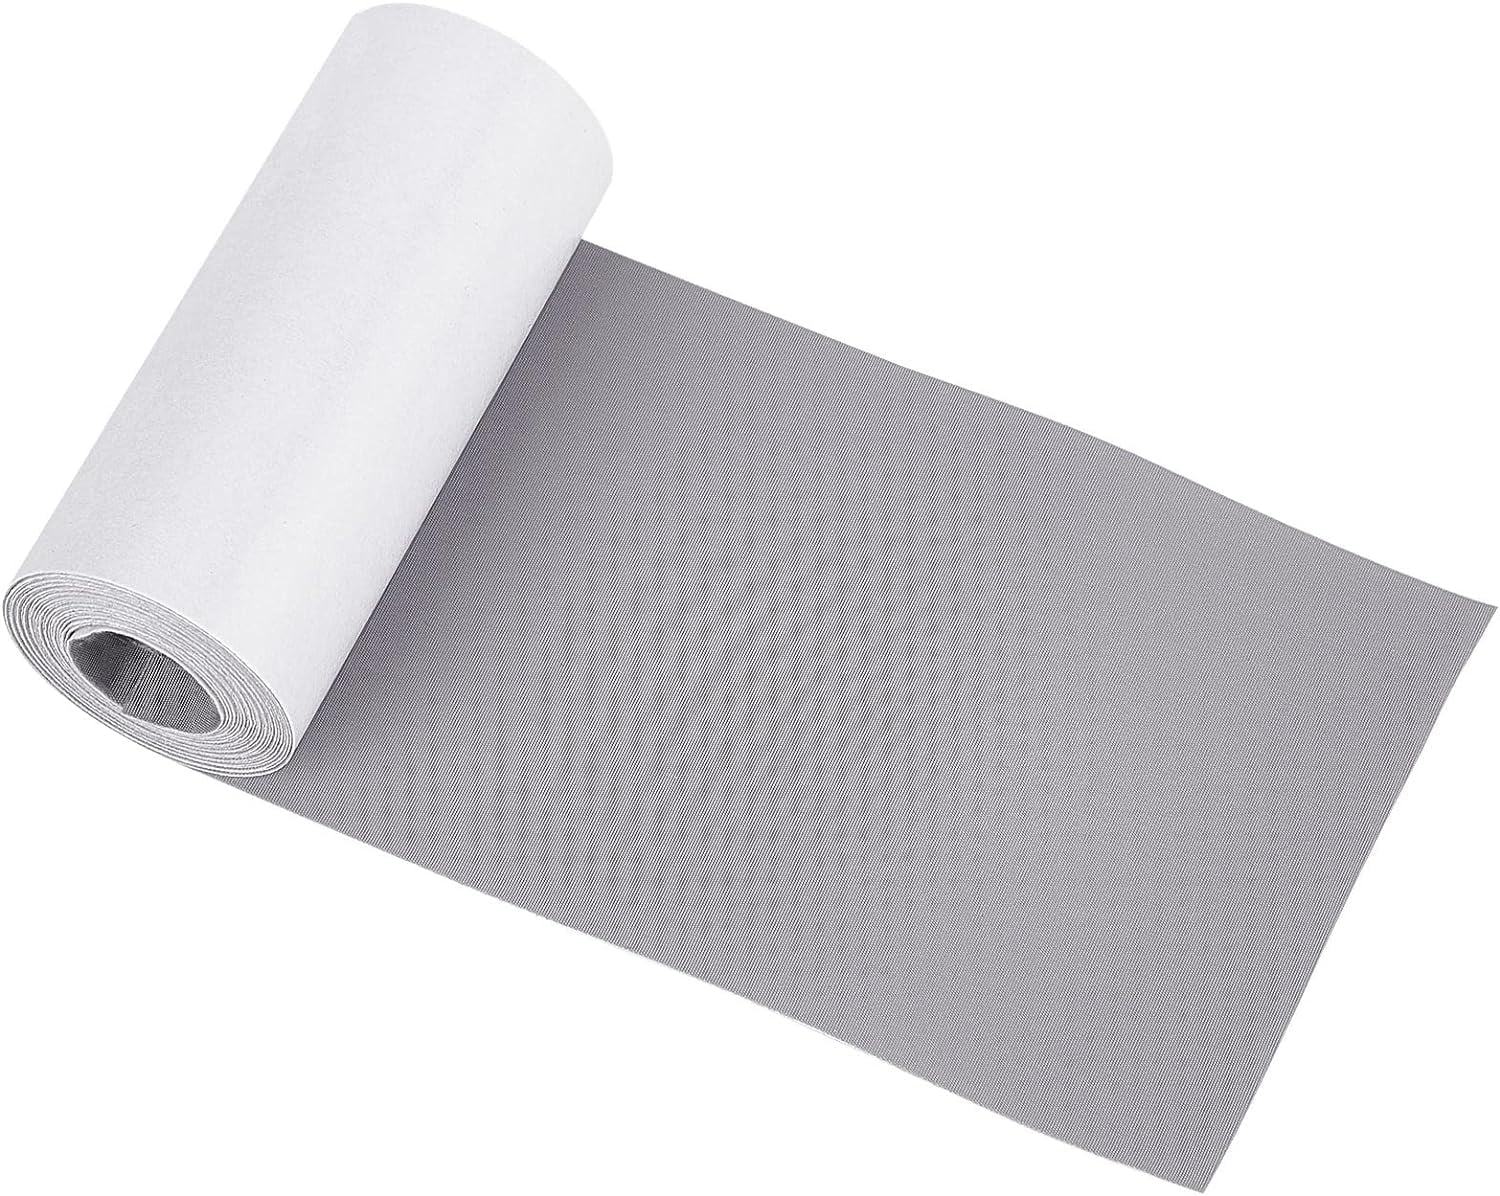 1Sheet Adhesive Felt Fabric Large Adhesive Felt Shelf Liner Pad